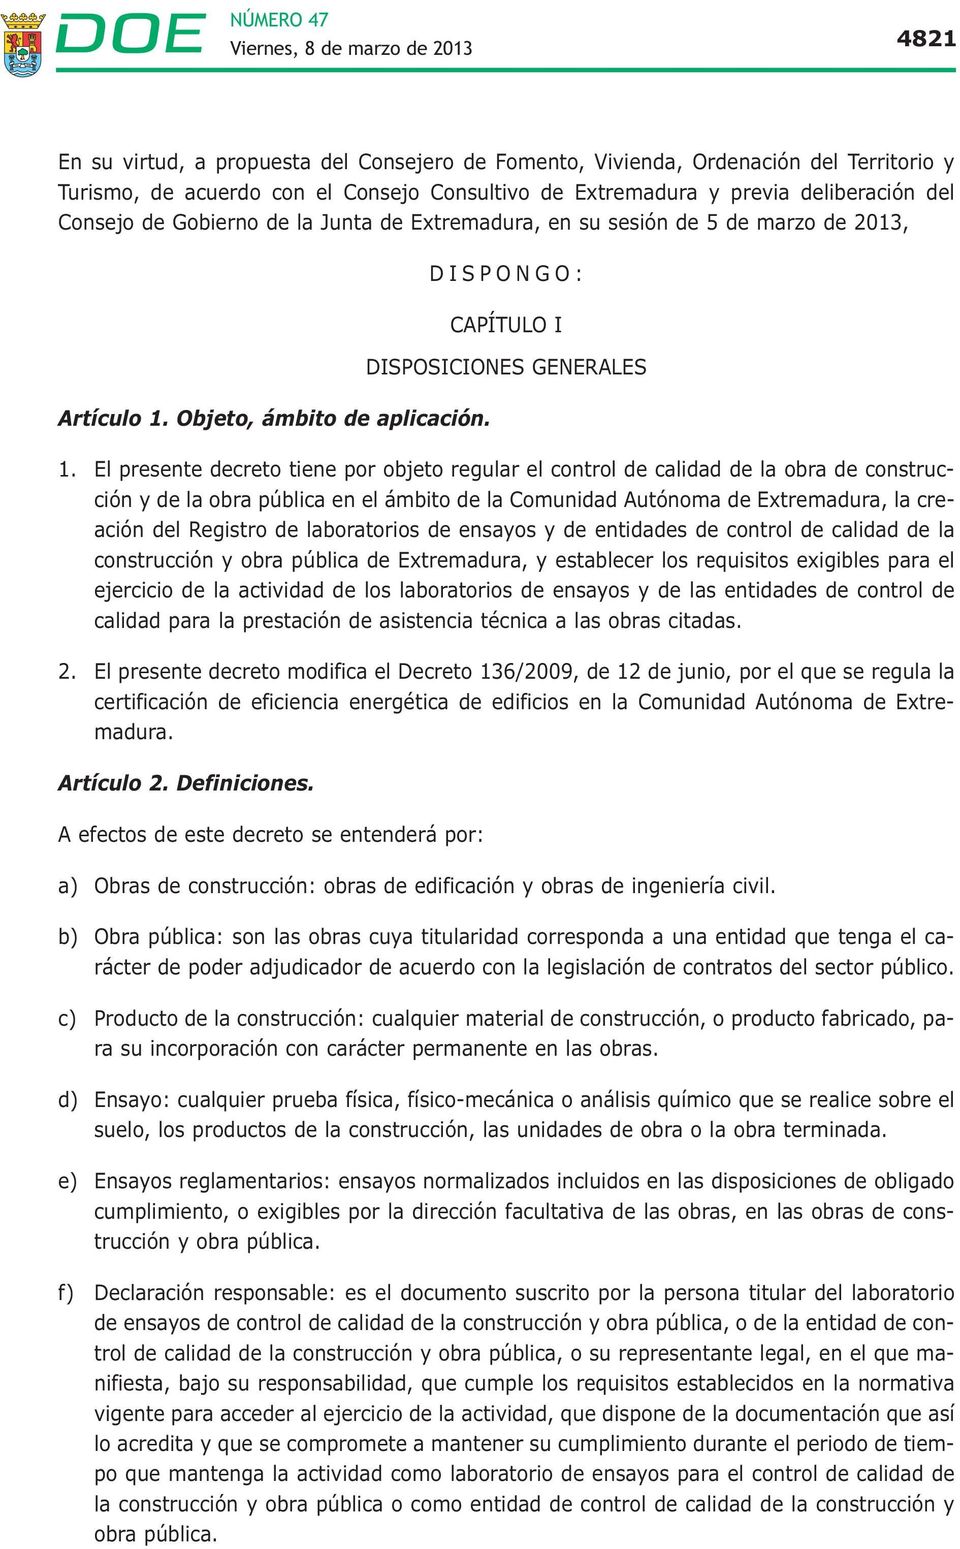 El presente decreto tiene por objeto regular el control de calidad de la obra de construcción y de la obra pública en el ámbito de la Comunidad Autónoma de Extremadura, la creación del Registro de